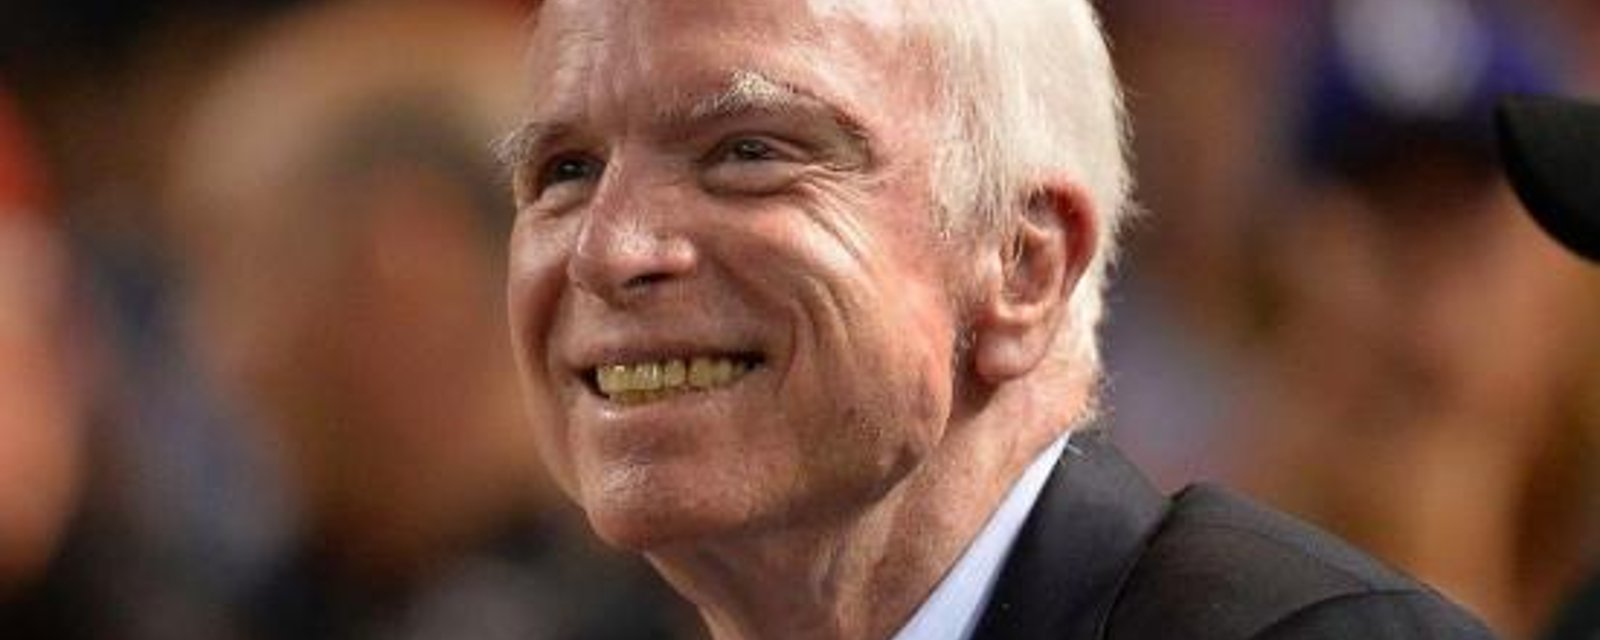 DERNIÈRE HEURE: Le sénateur John McCain est décédé à 81 ans